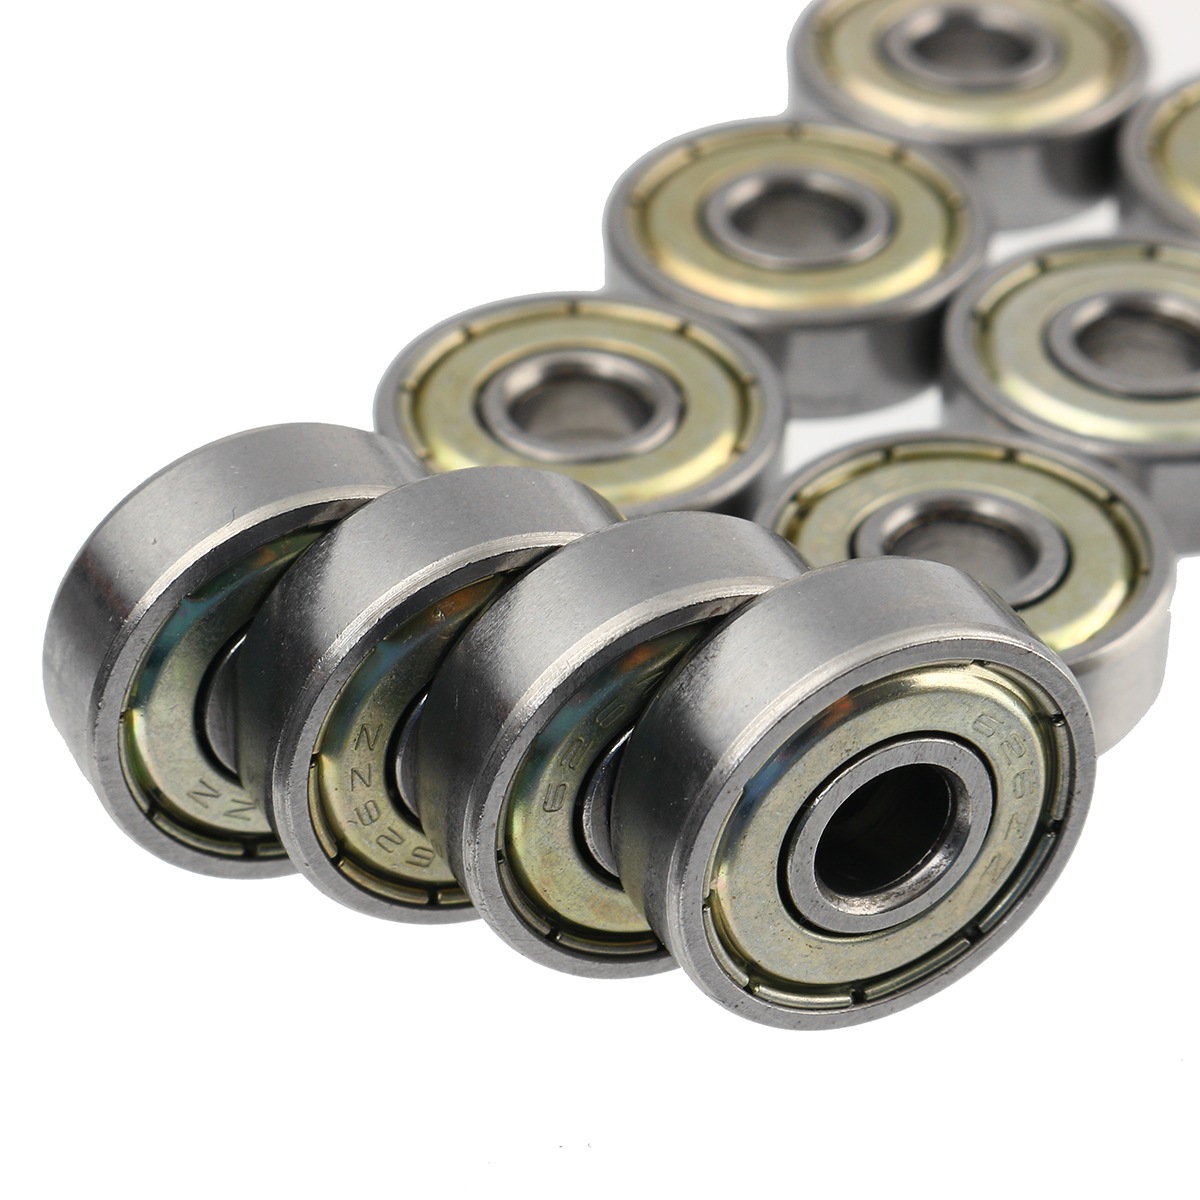 10Pcs-High-Carbon-Steel-Ball-Bearing-Skate-Wheels-For-Skateboard-Bearings-1657359-6